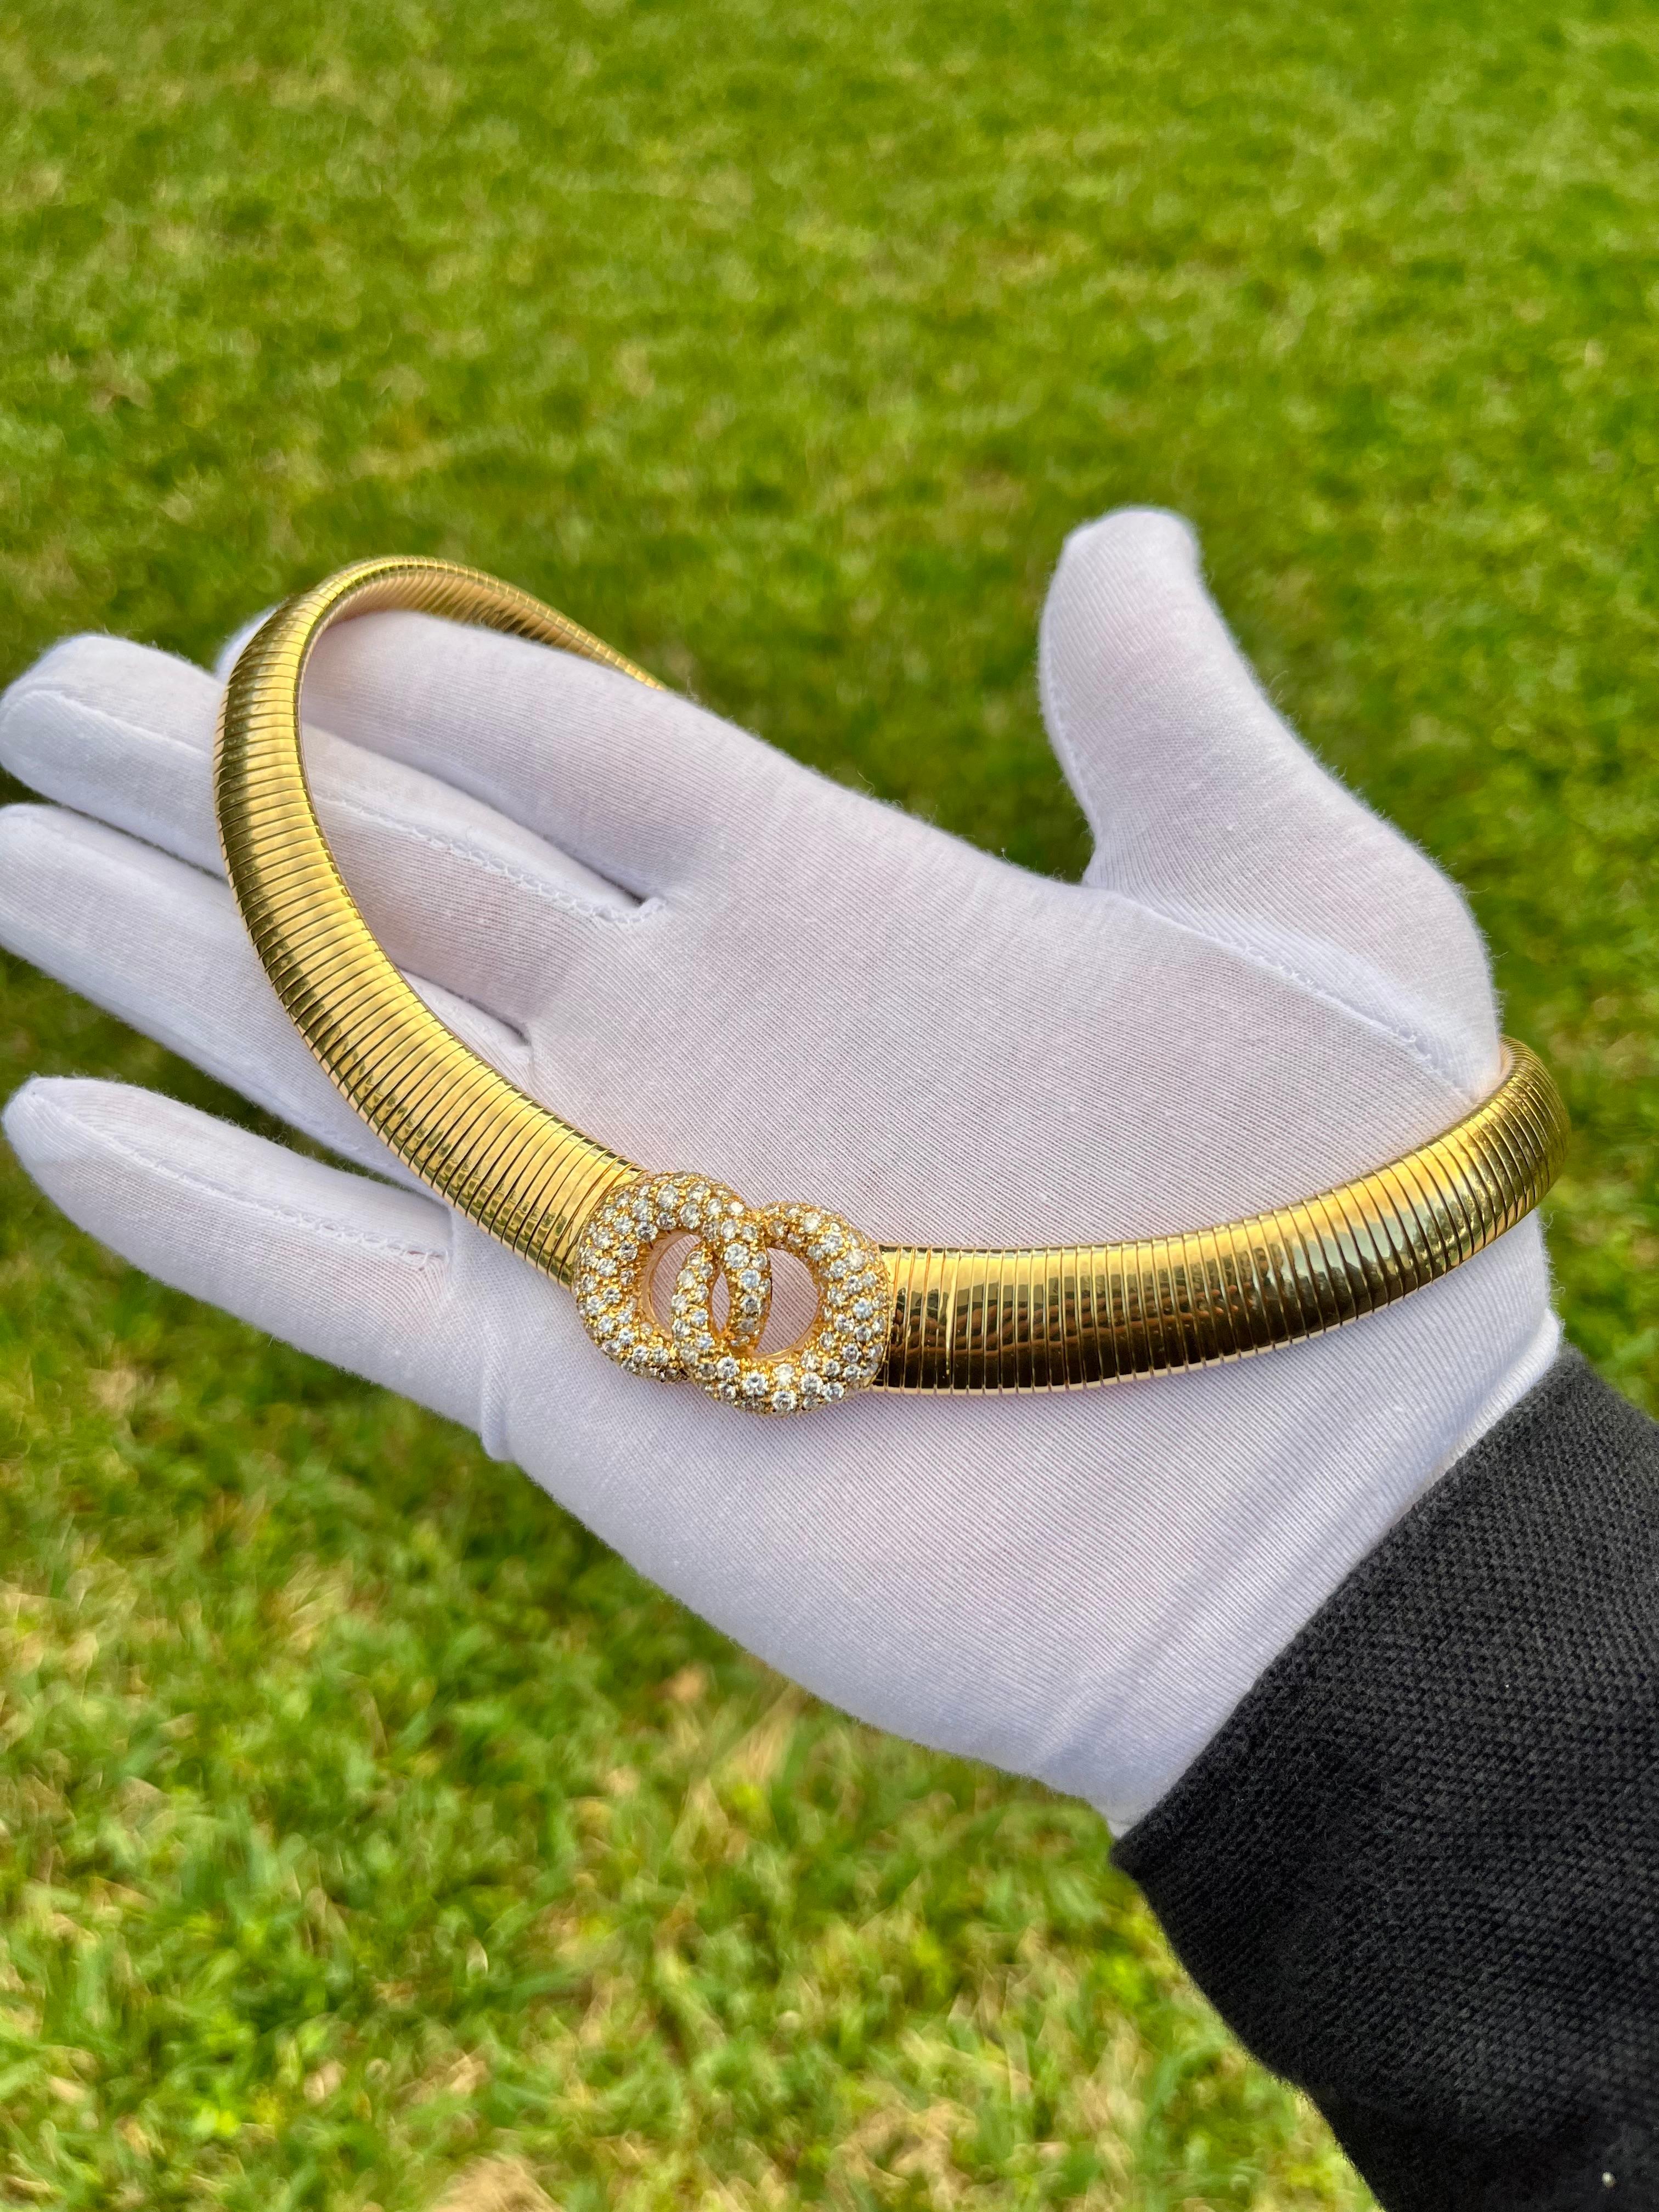 Kaufen Sie diese in Italien hergestellte Halskette mit natürlichen Diamanten aus 18 Karat massivem Gold. Mit fast 100 Gramm 18-karätigem Gold und natürlichen Diamanten der Farbe D-F ist dieses Halsband im Chanel-Stil ein wahres Meisterwerk. Ihr